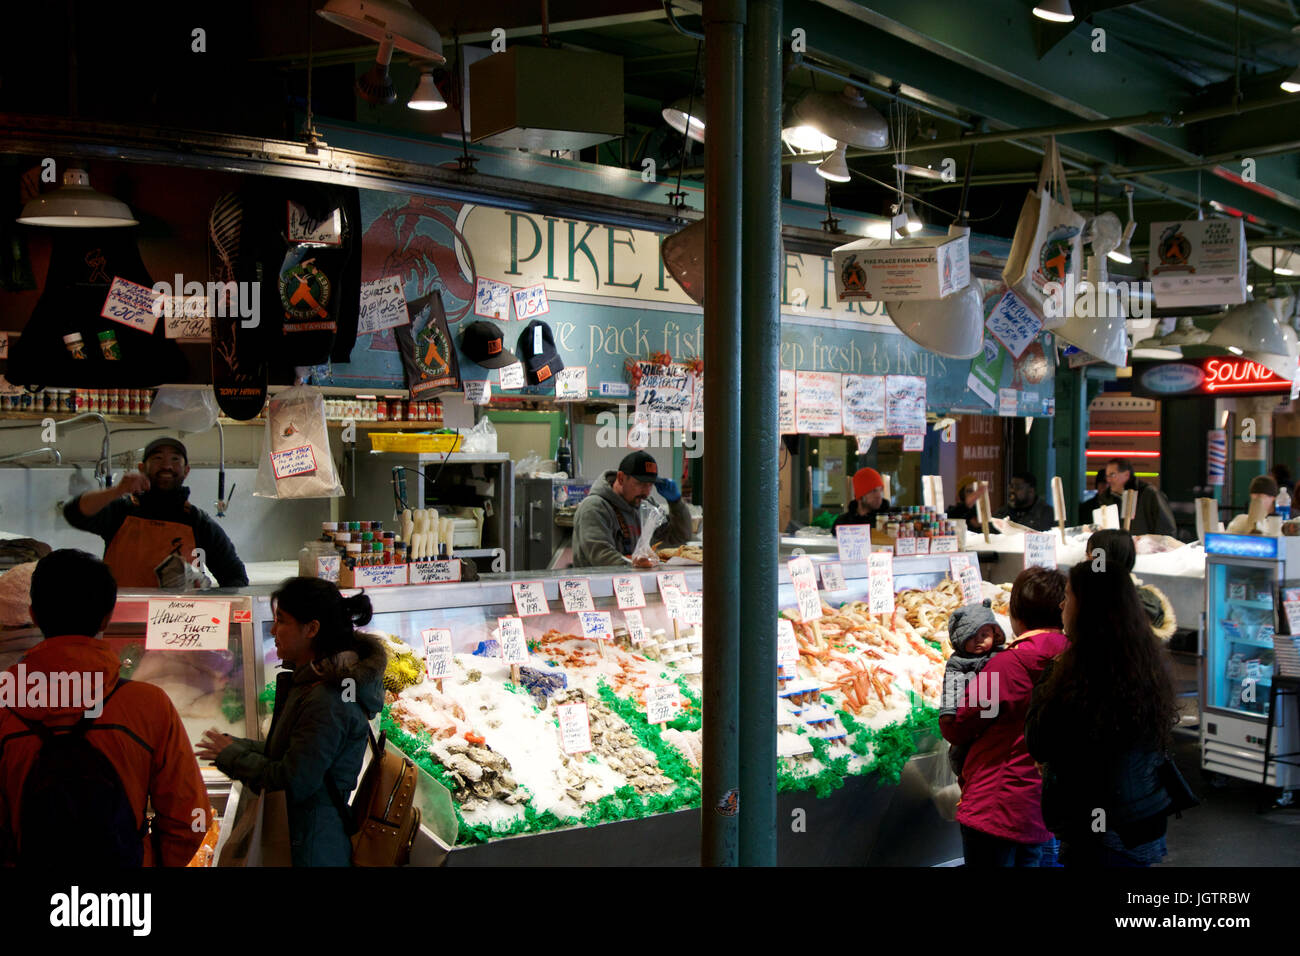 SEATTLE, WASHINGTON, USA - 24. Januar 2017: Kunden am Pike Place Fish Company warten auf Bestellung Fisch bei den berühmten Fischmarkt. Dieser Markt, eröffnet im Jahr 1930, ist bekannt für ihre Open-Air Fisch Markt Stil. Stockfoto